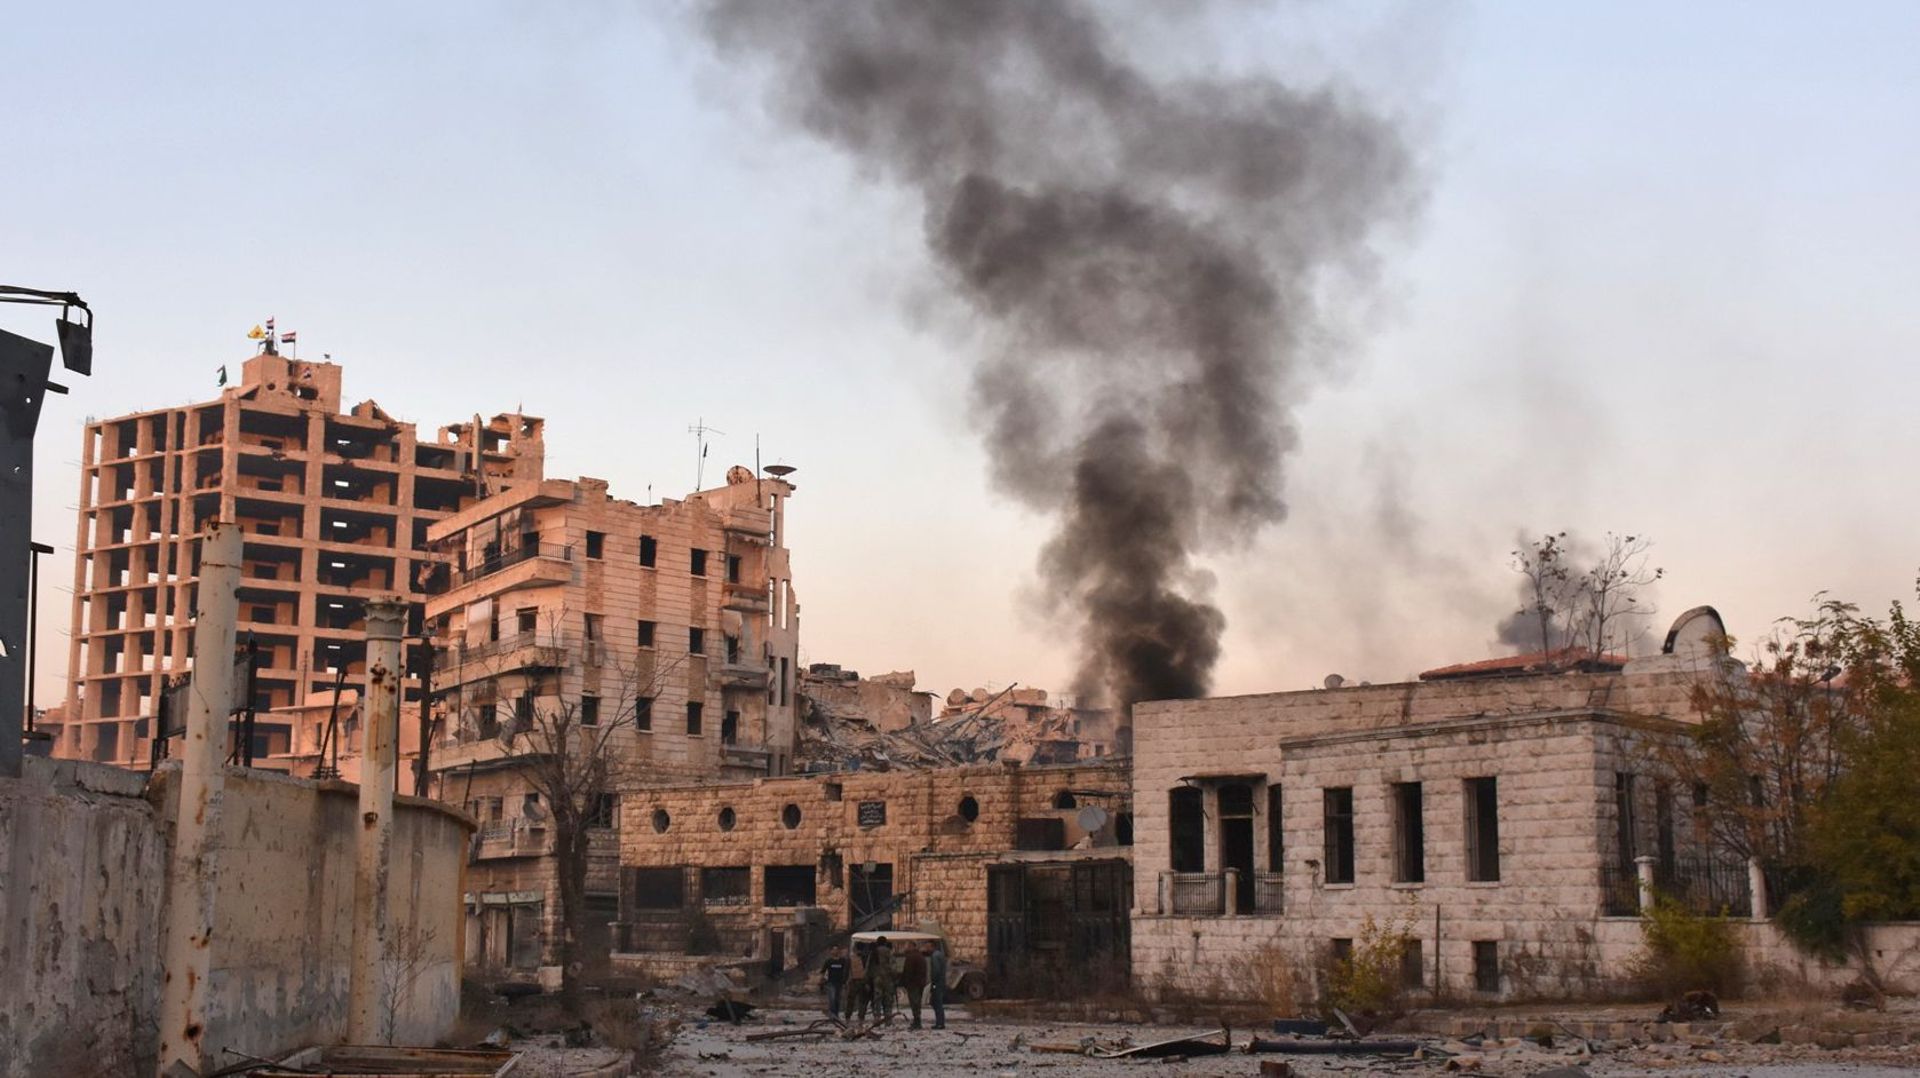 La rébellion s'effondre à, Alep, l'armée de Bachar Al Assad avec l'afflux de l'aviation russe est en train de reconquérir la 2ème ville du pays. Les habitants d'Alep subissent des bombardements incessants, la situation est pour eux, très critique.